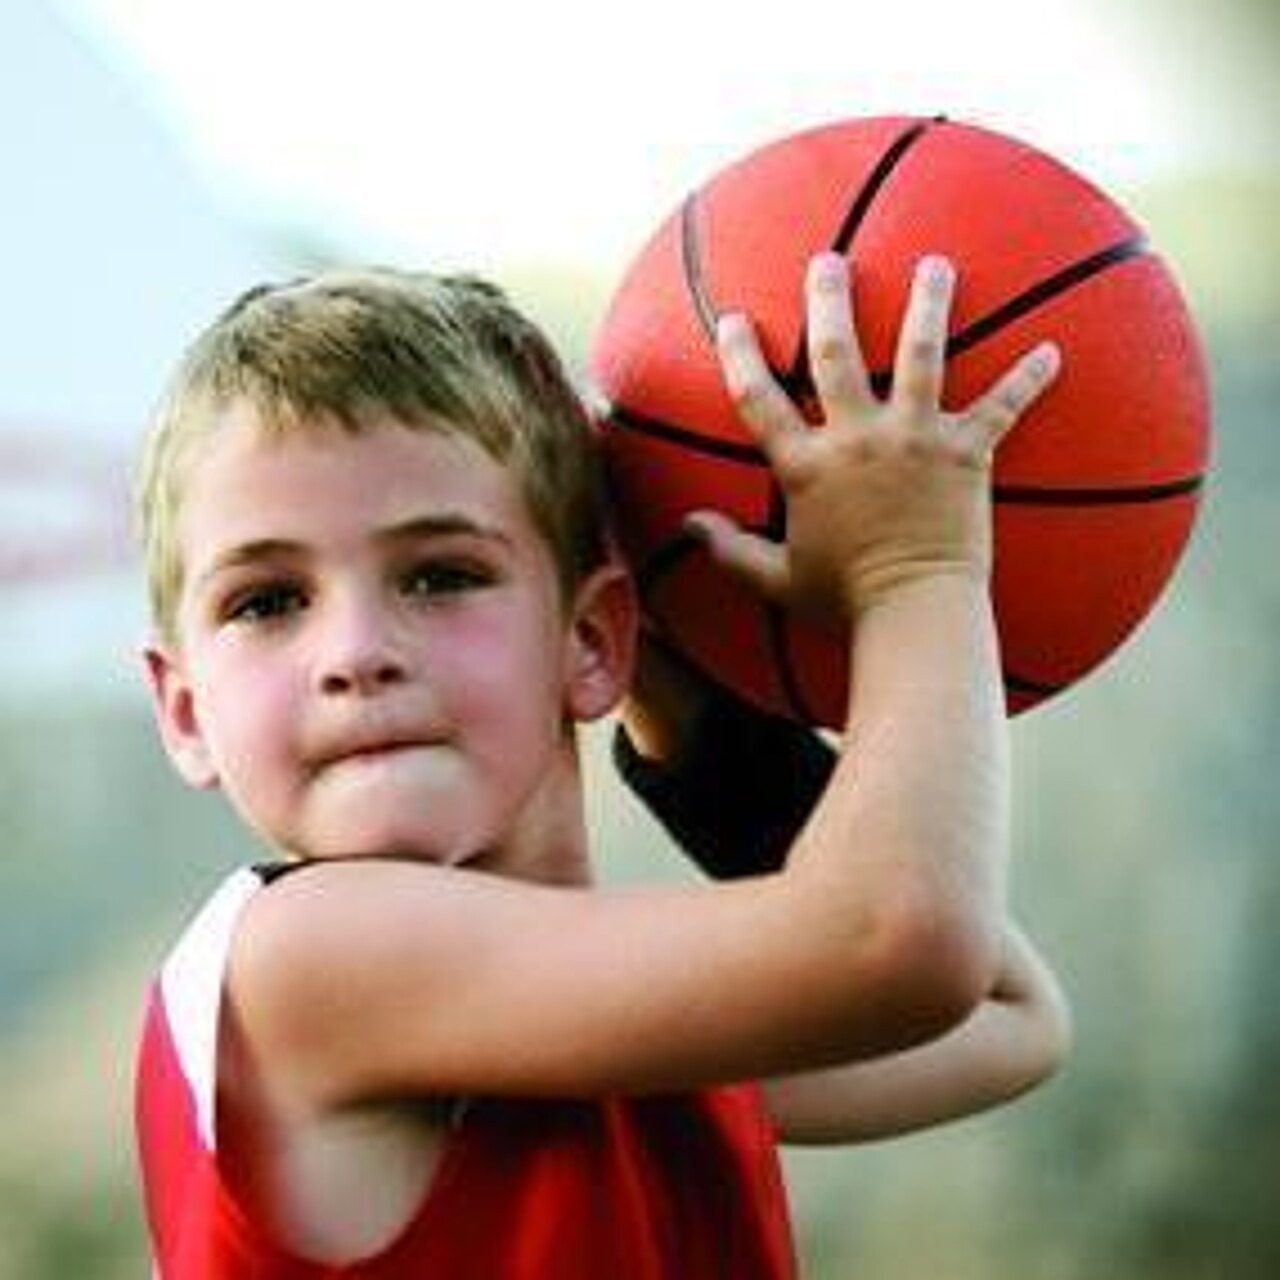 kleiner Junge will einen Basketball werfen